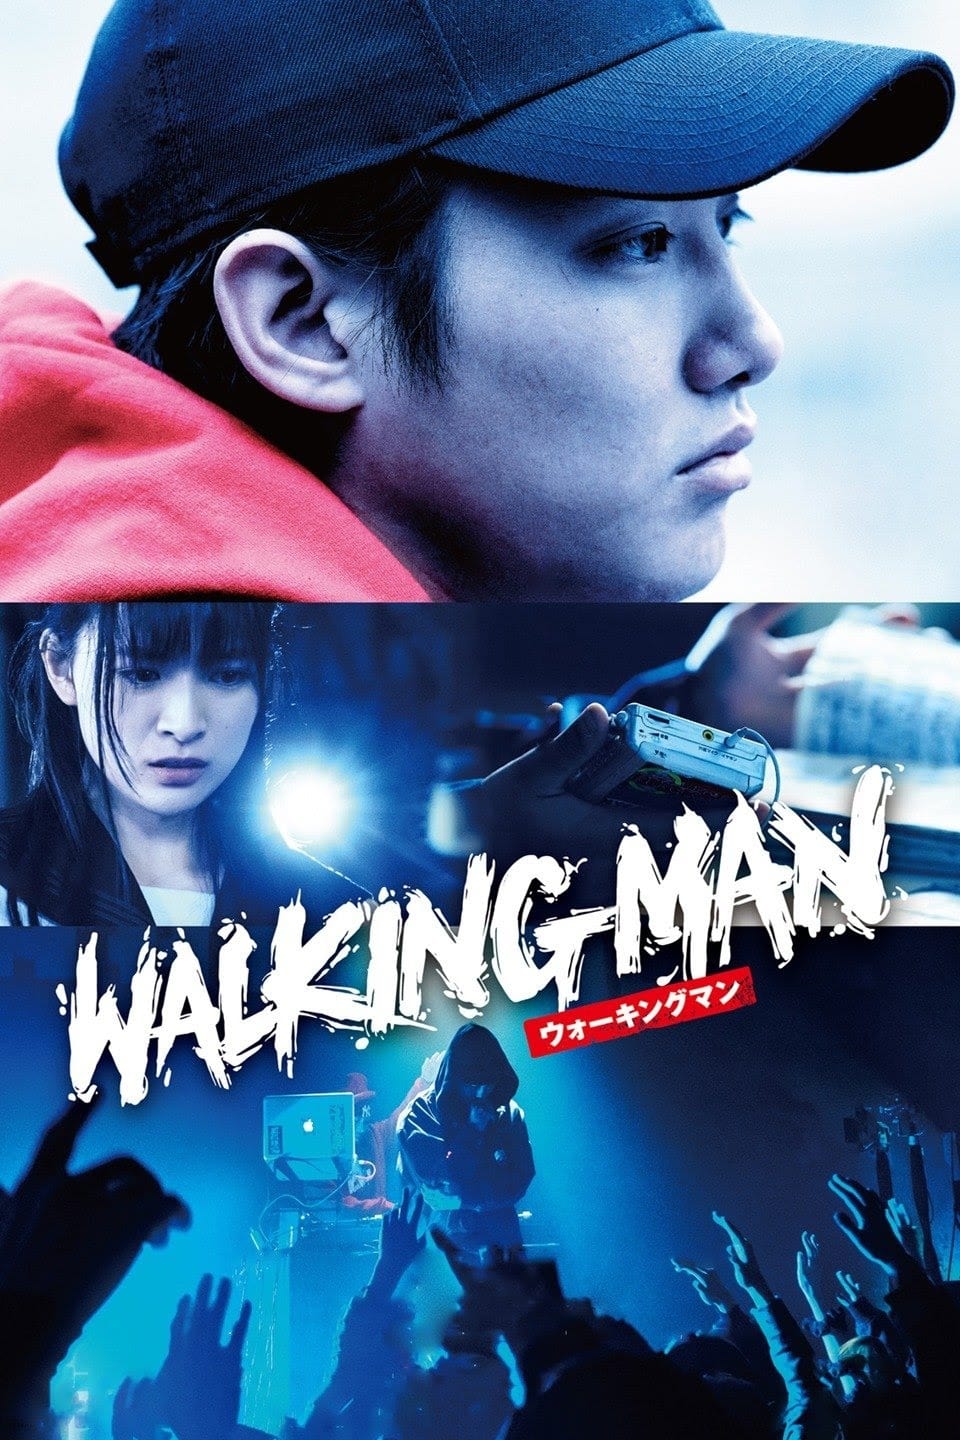 Walking Man (2019)